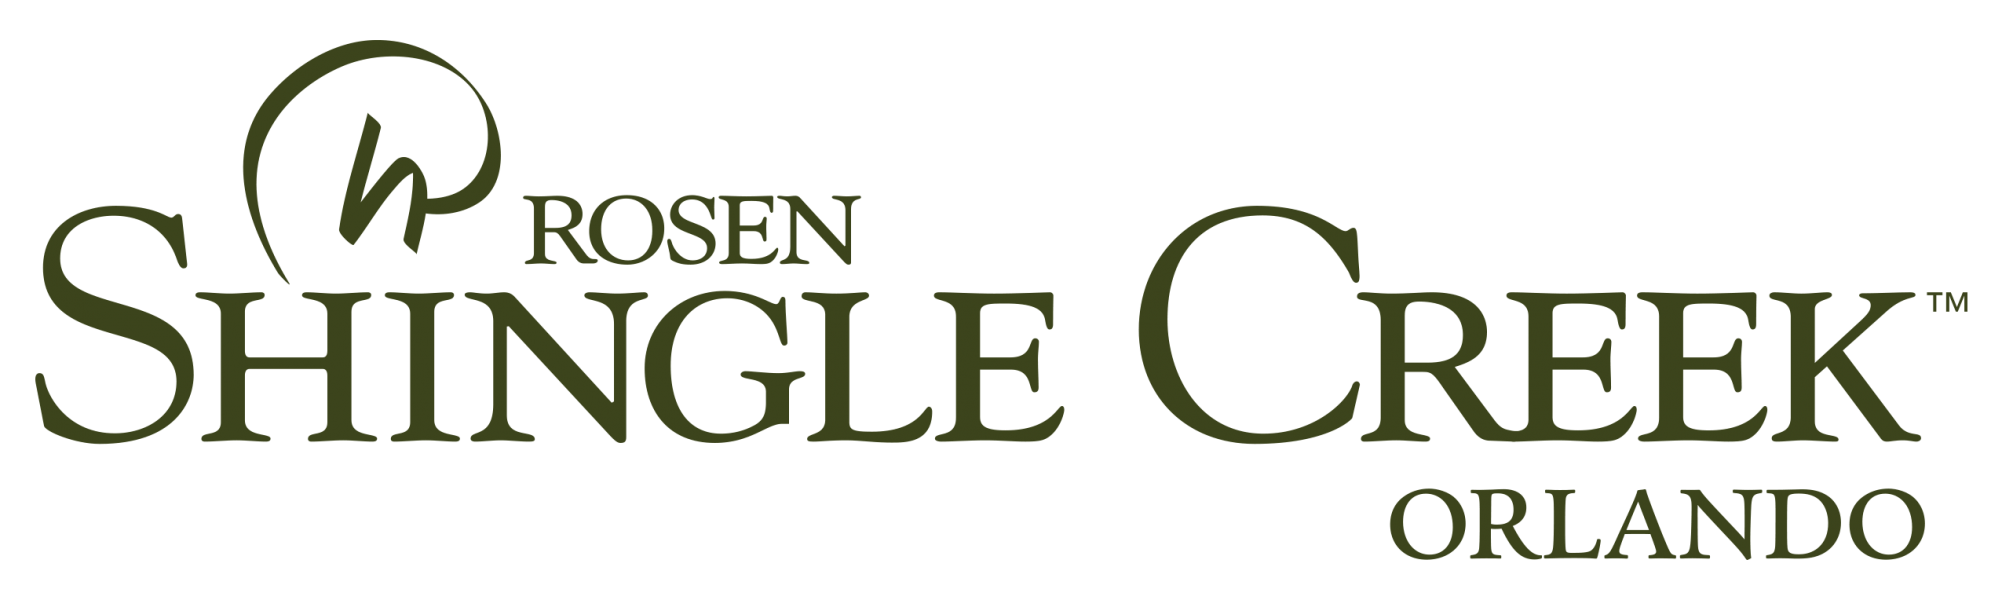 Rosen Logo - Logos. Rosen Shingle Creek®